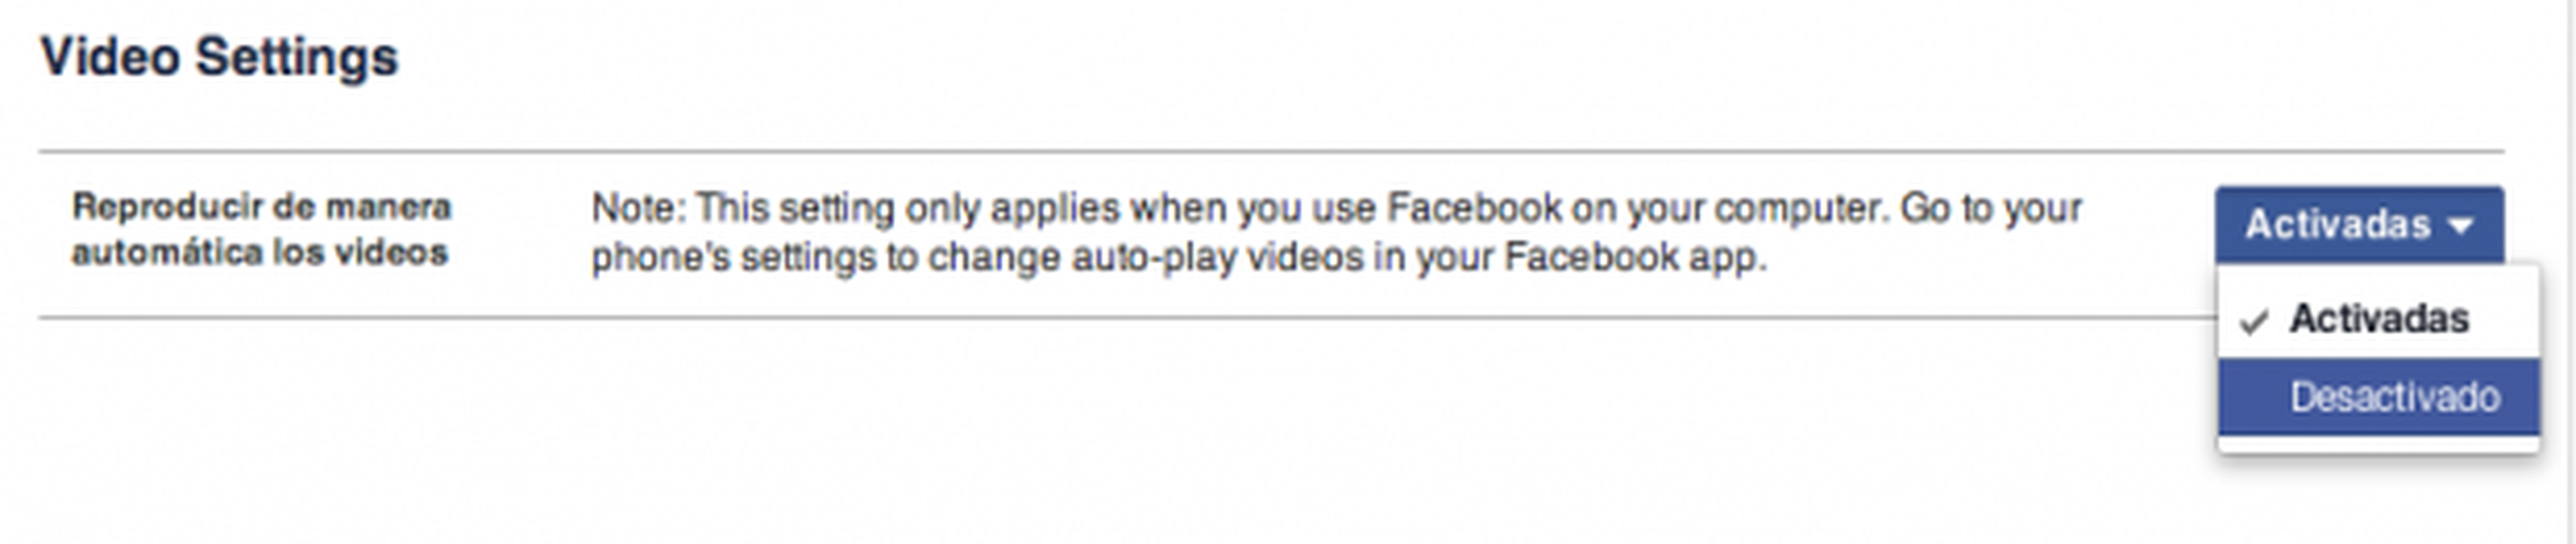 Desactivar vídeos automáticos en Facebook